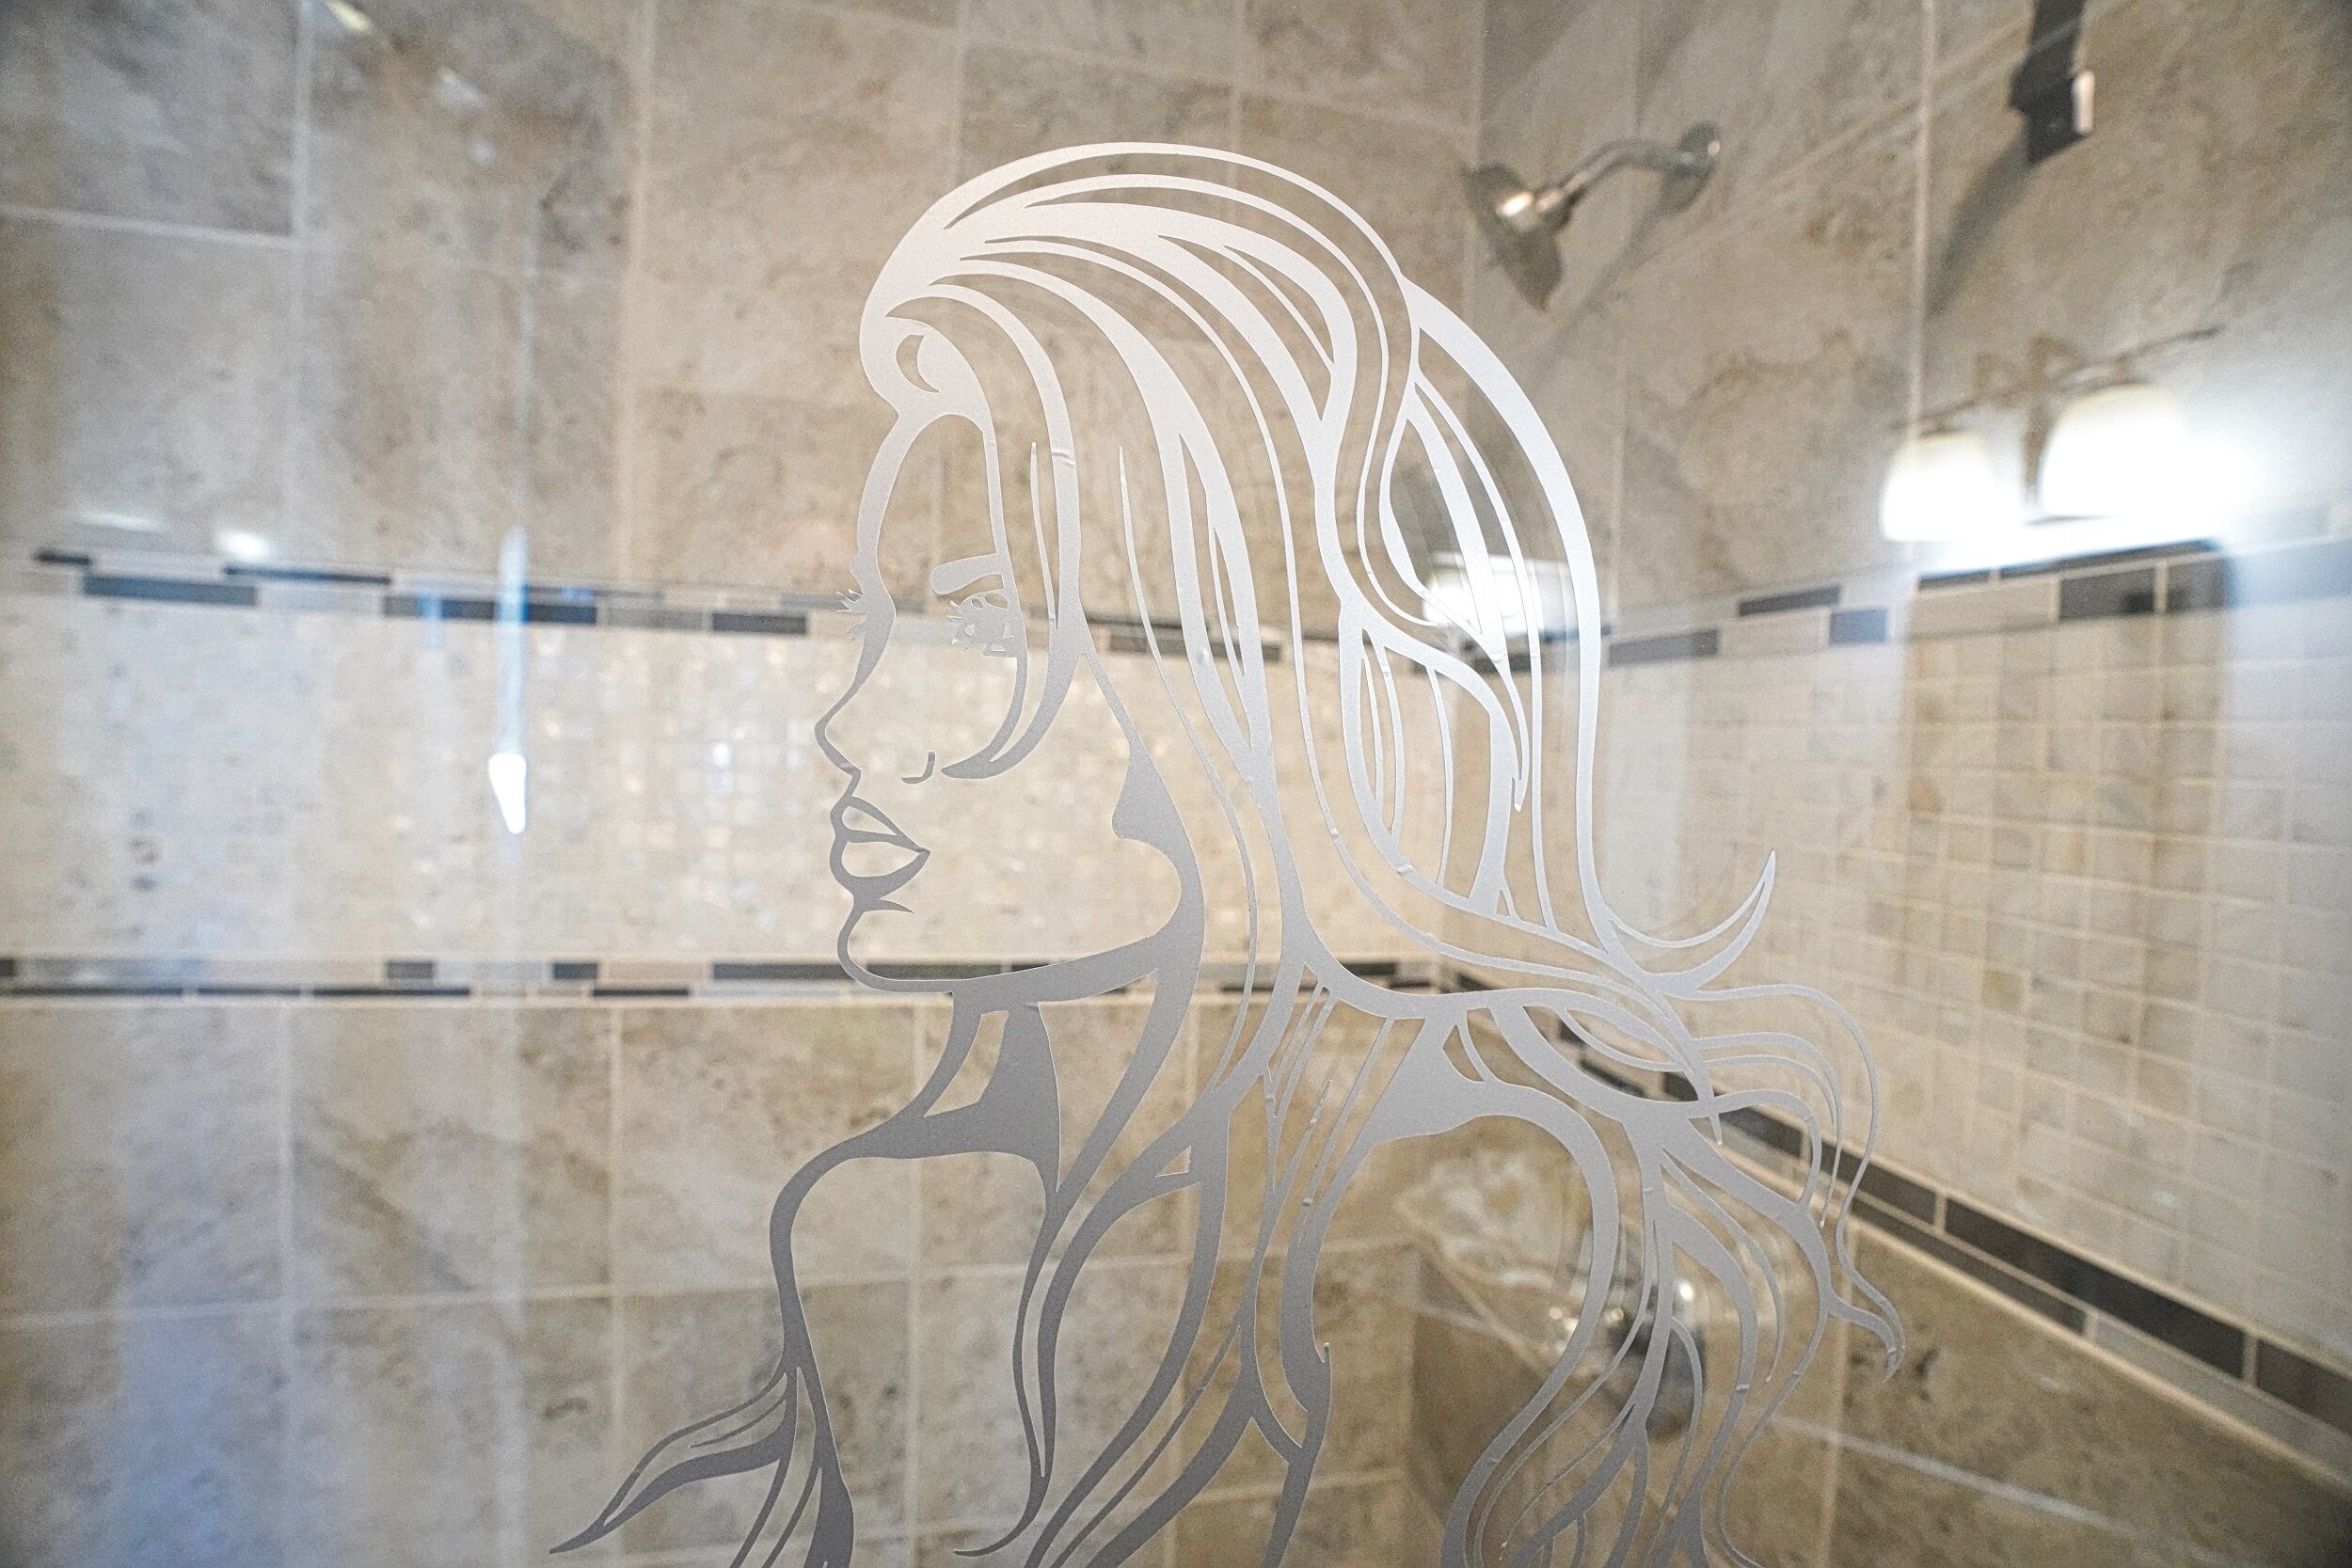 signature mermaid on the glass.jpg